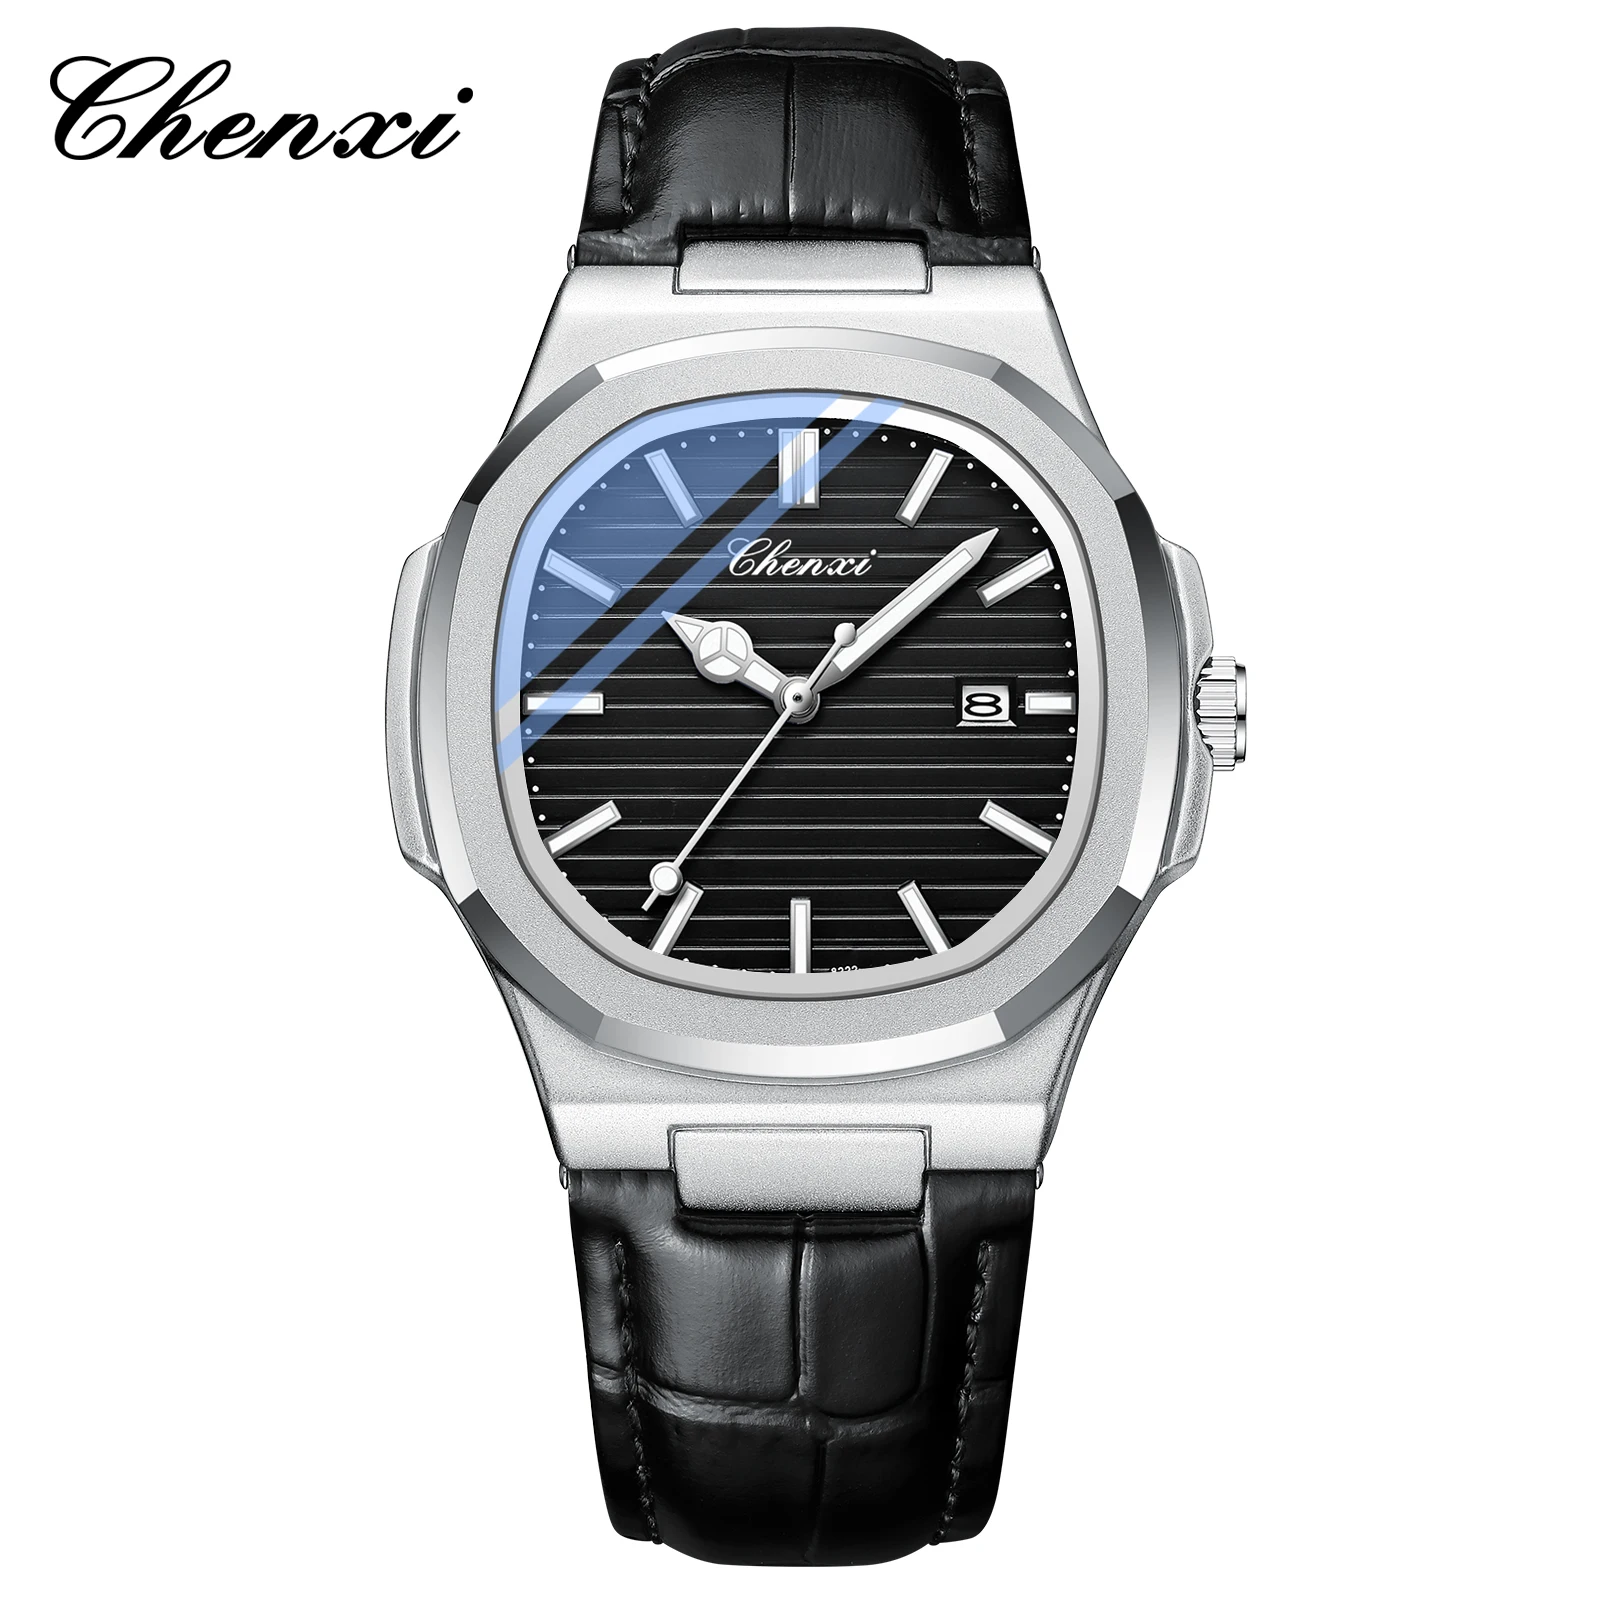 

CHENXI 8222 Top Brand Popular design Mens Date Sport Watches Luxury Waterproof Watch Quartz Wristwatches Relogio Masculino